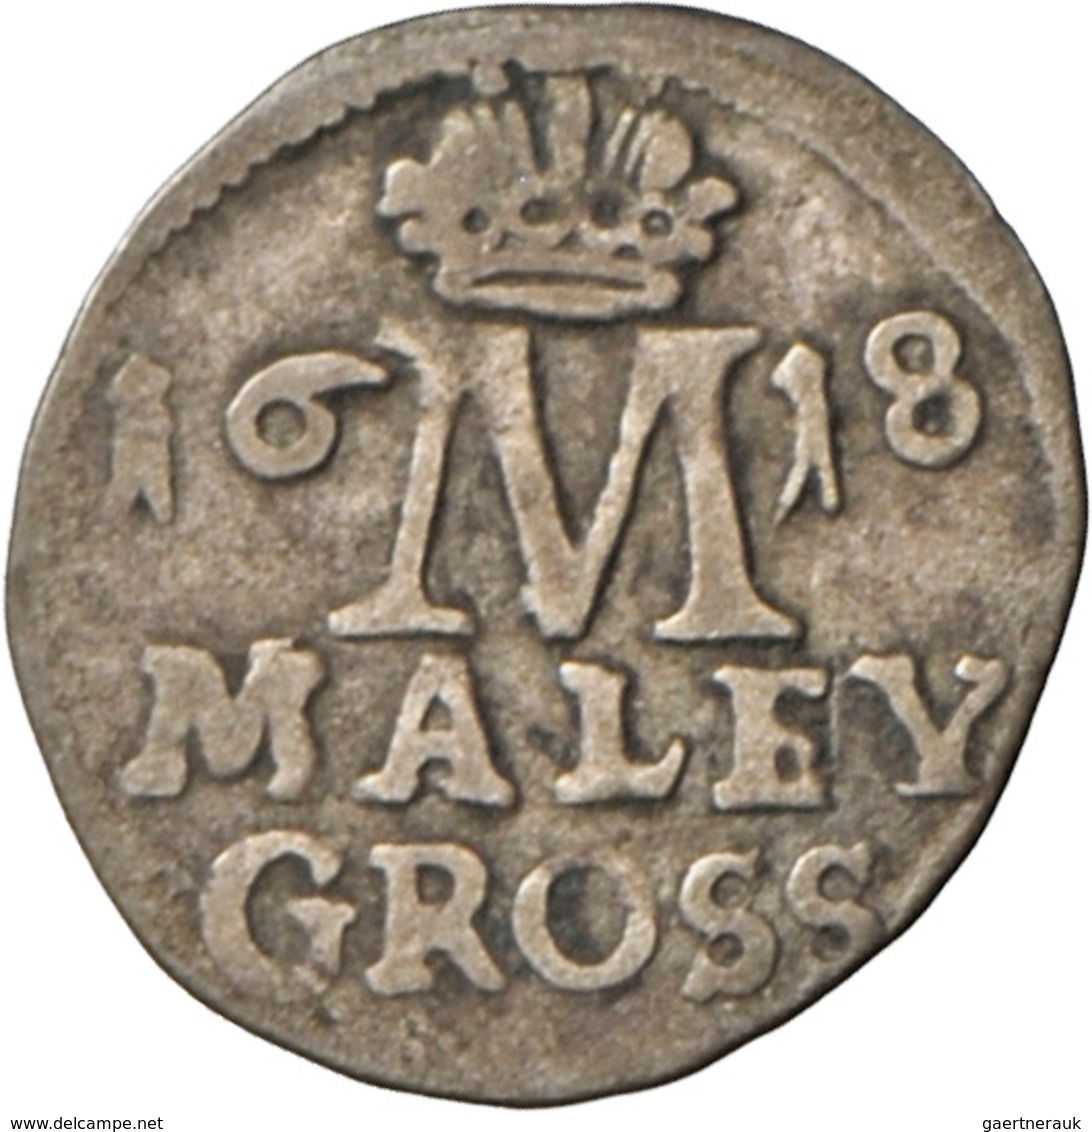 Tschechien: Böhmen, Lot 5 Münzen: Maximilian II: Weißgroschen 1576 (Prag?), Rudolf II: Weißgroschen